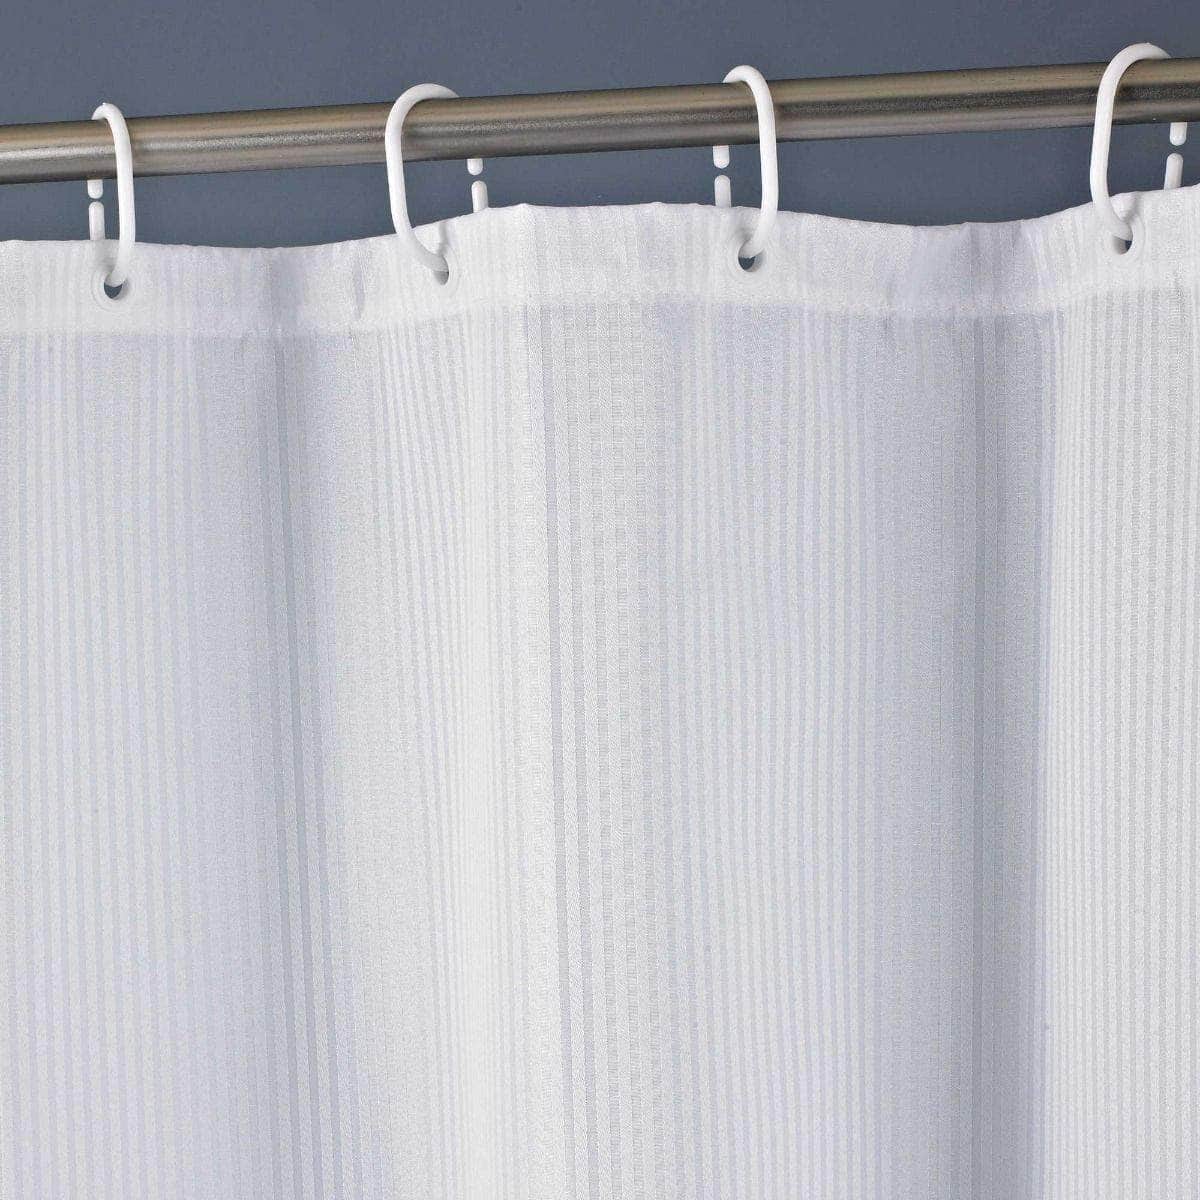 Luxury White Shower Curtains Shower Curtains 100% Polyester BedandbathLinen